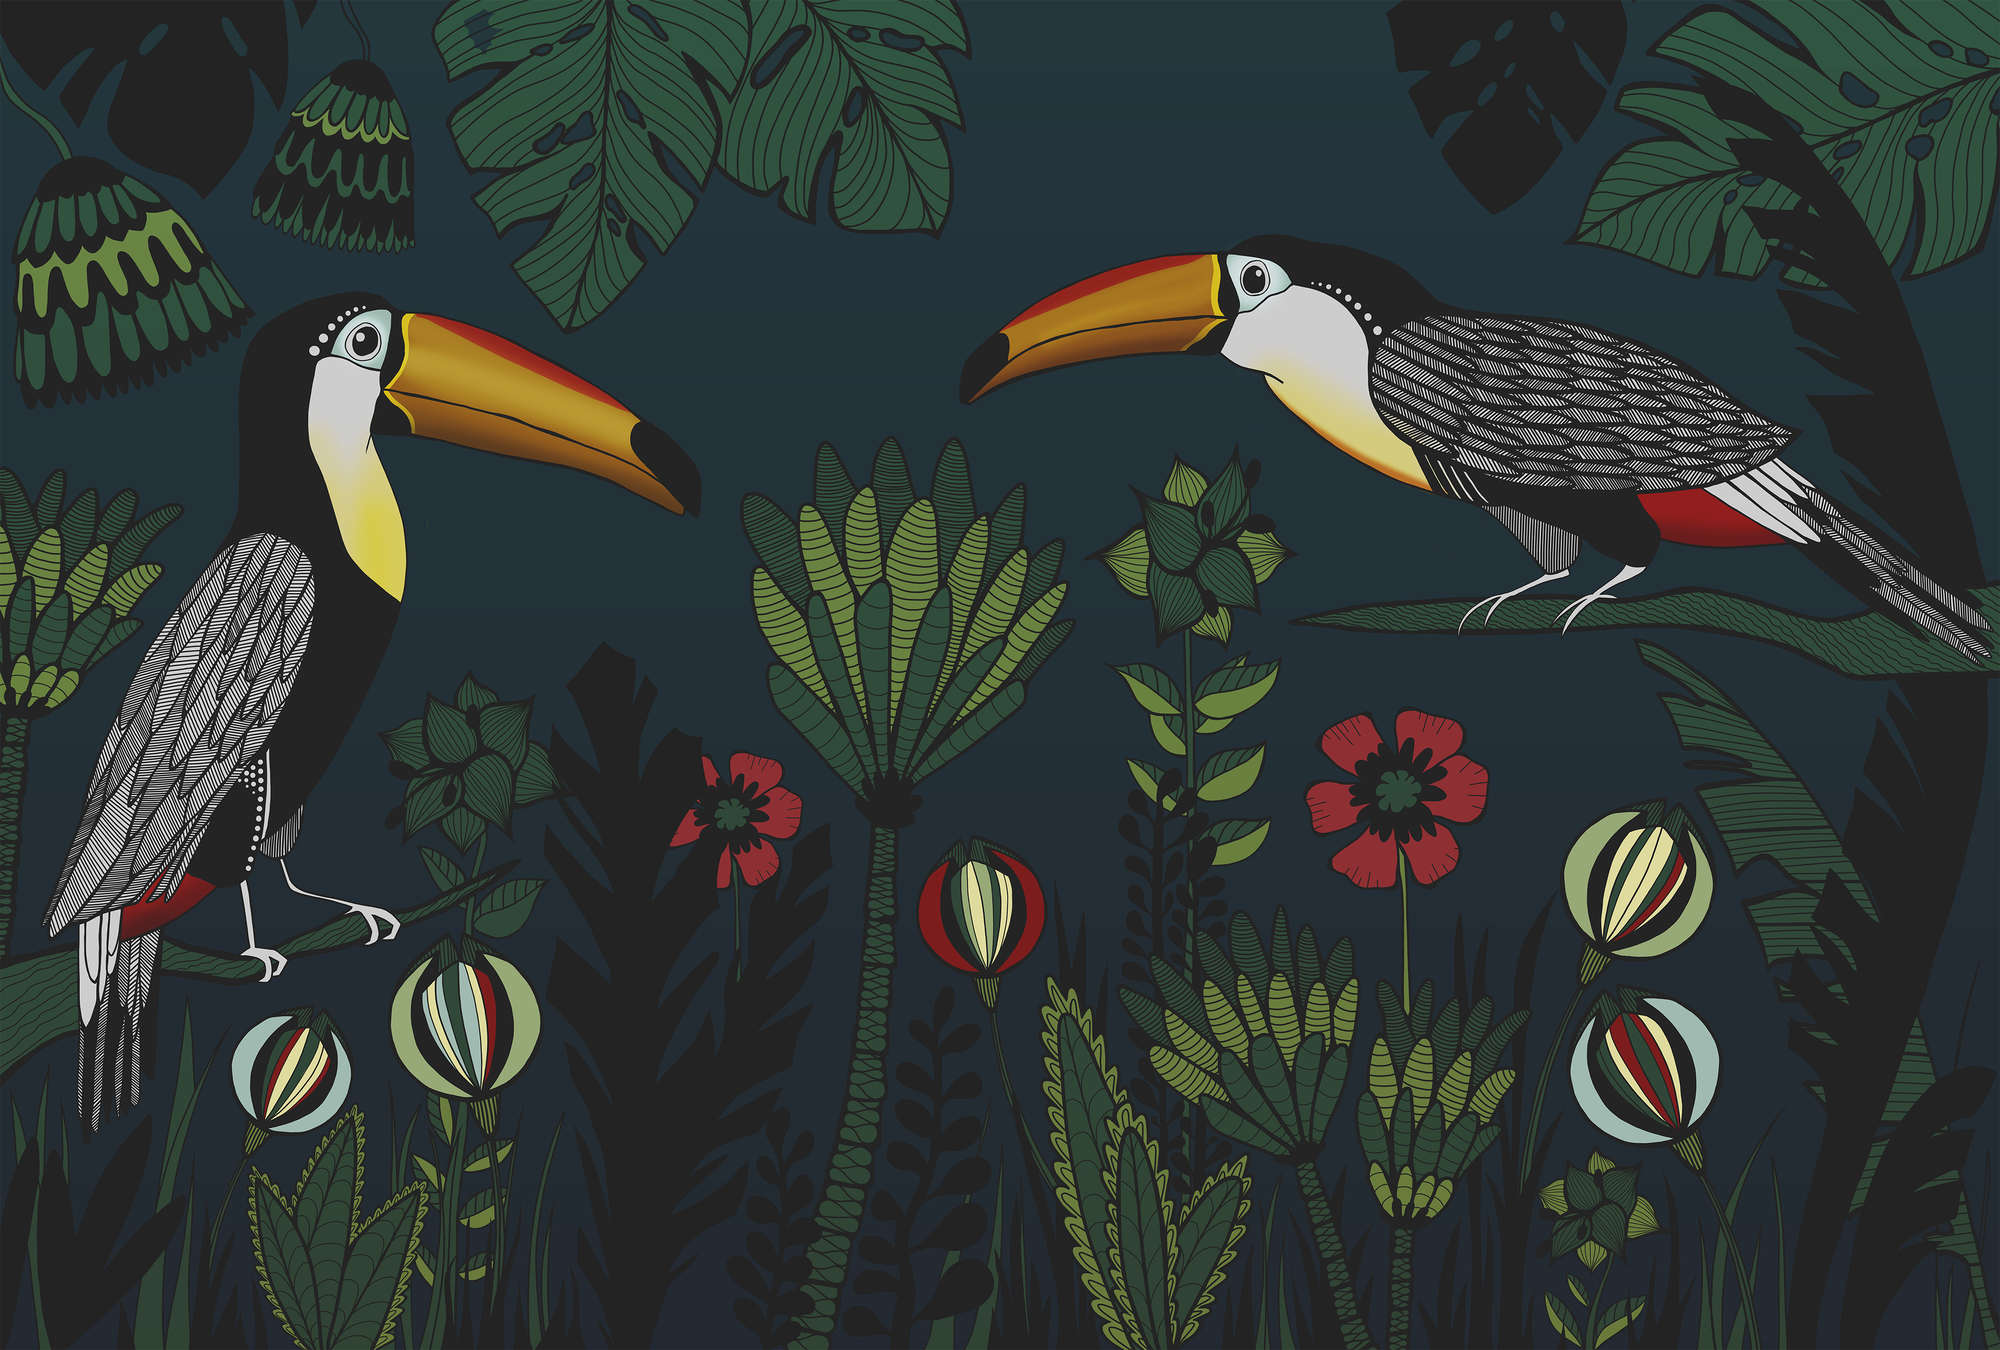             Fototapete Dschungel Muster mit Vögeln im Zeichenstil
        